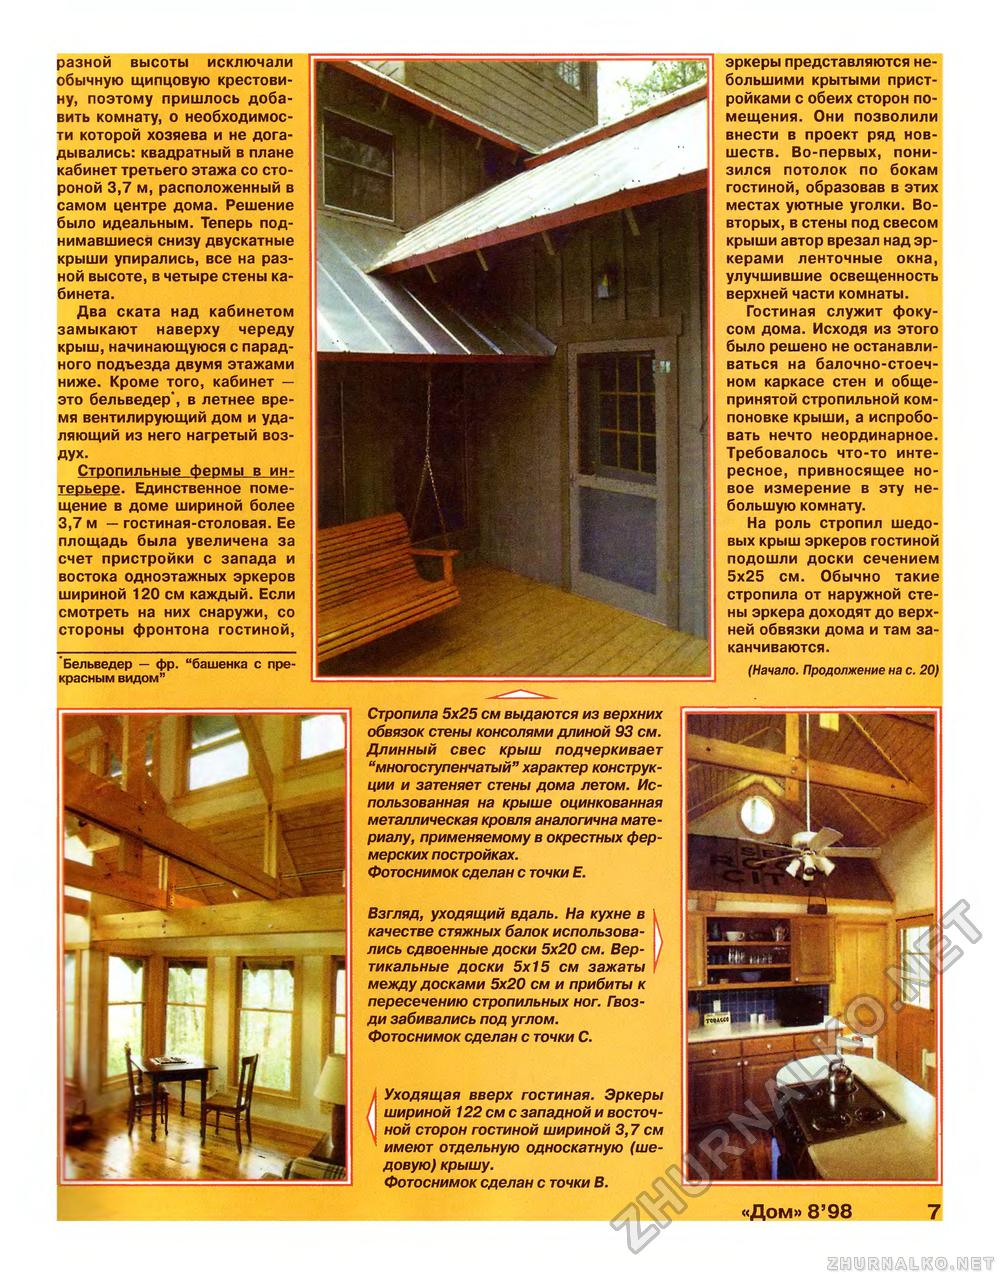 Дом 1998-08, страница 7